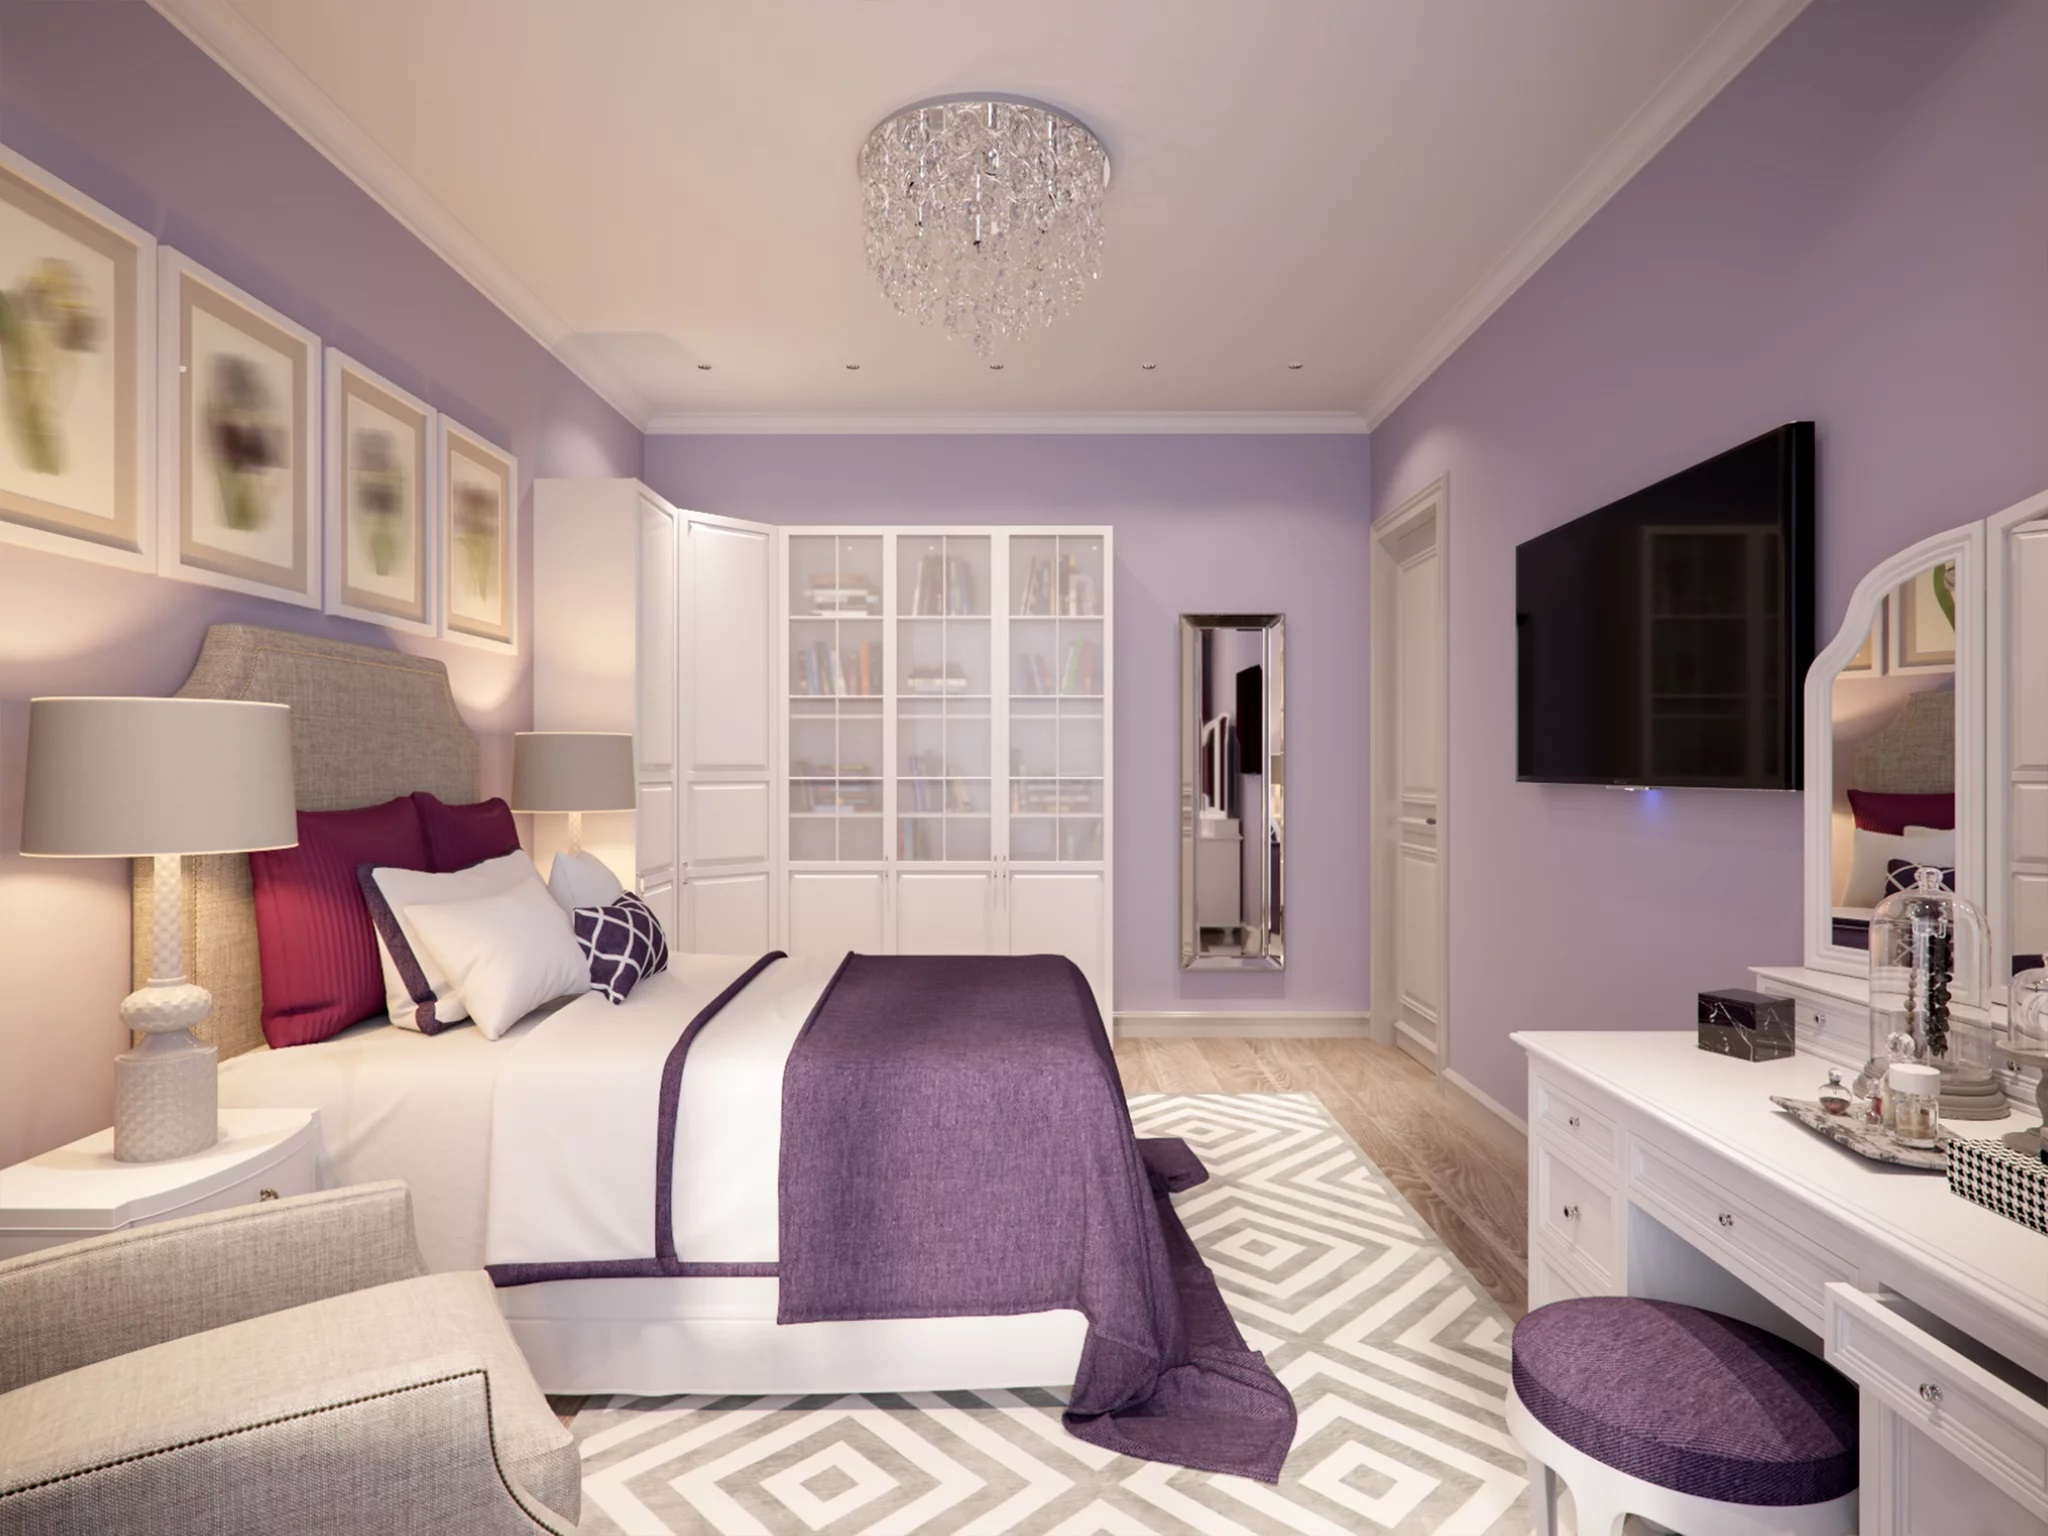 Sử dụng màu tím với sắc độ phù hợp trong thiết kế phòng ngủ